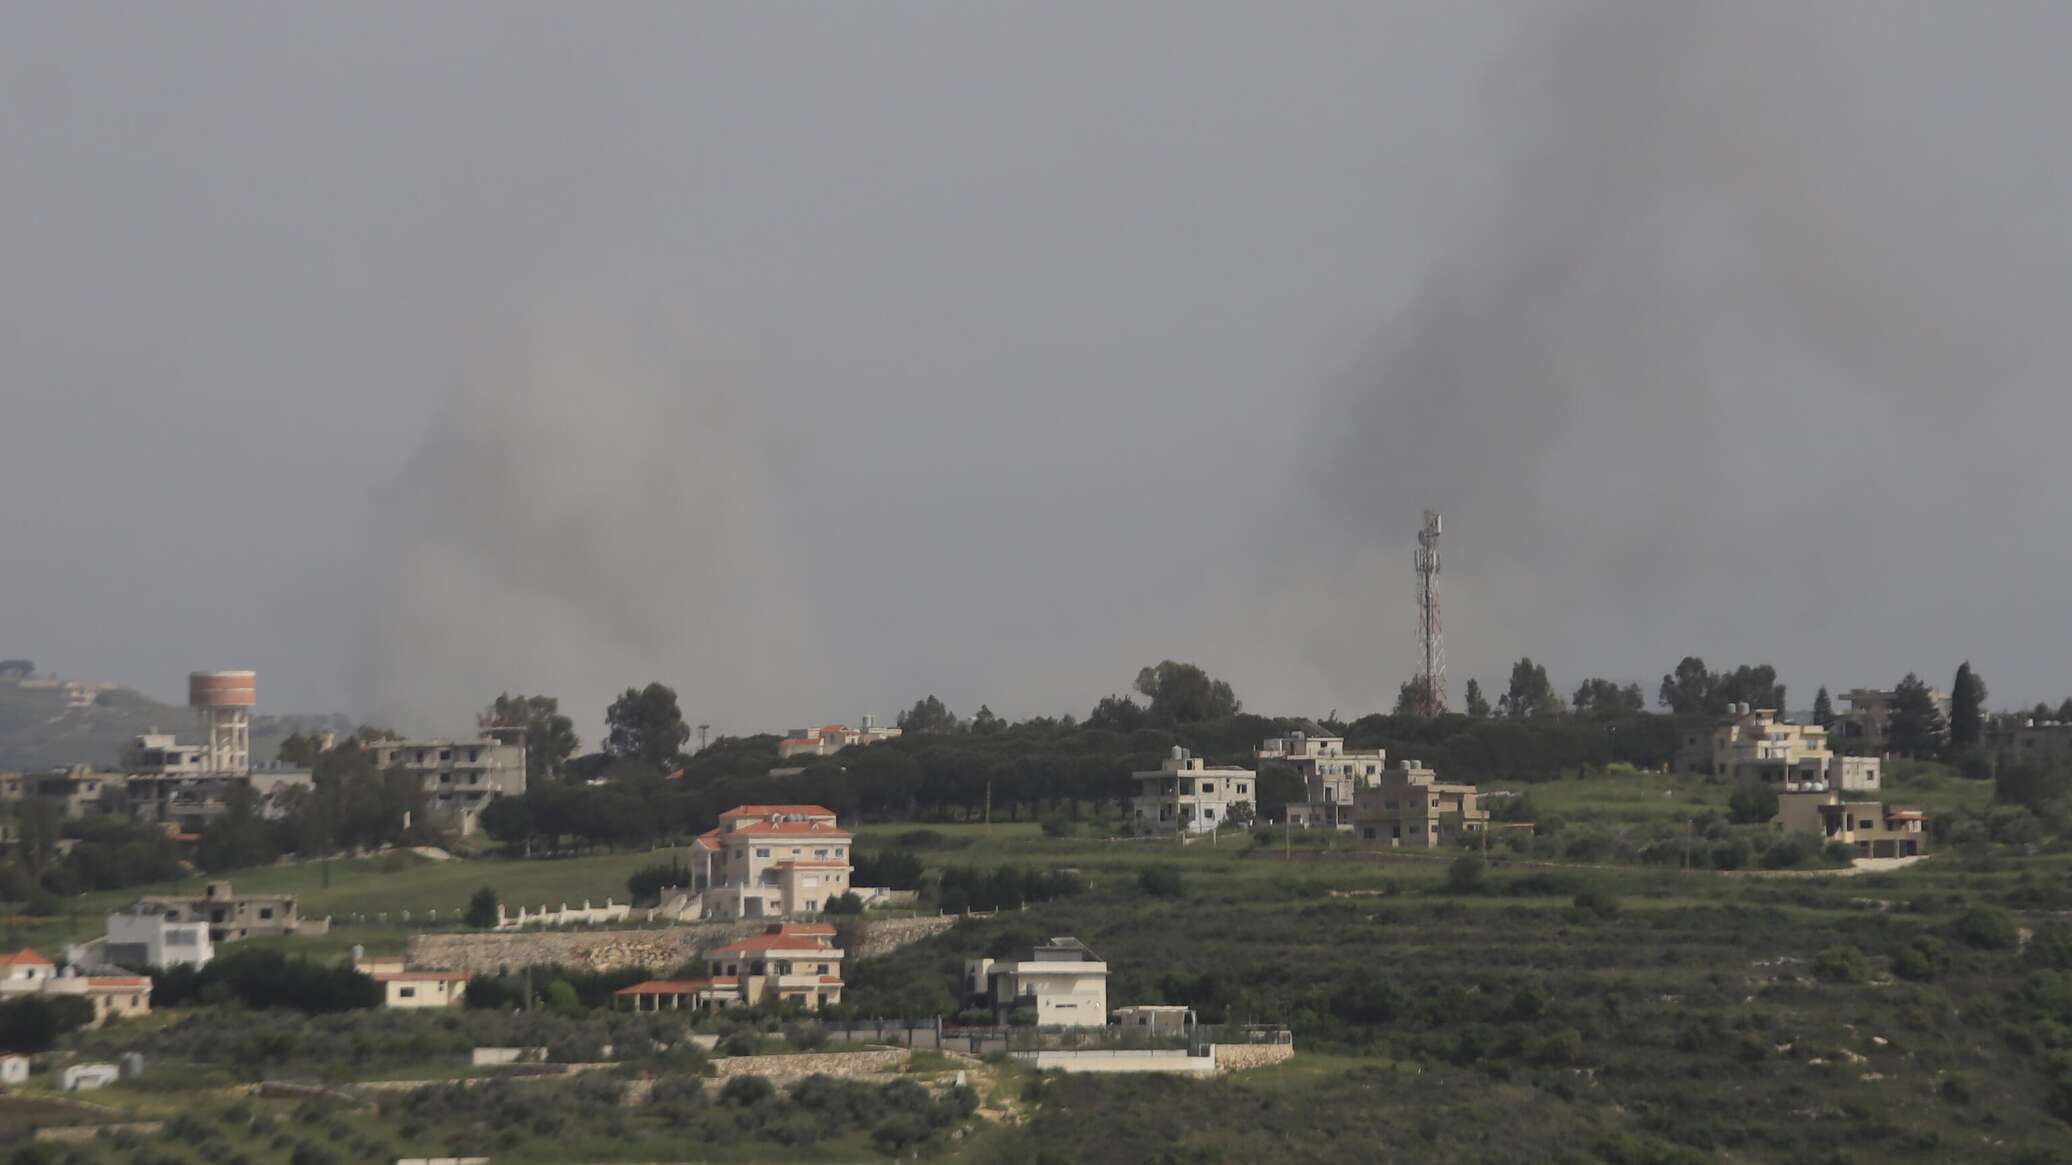 "حزب الله" اللبناني يستهدف 5 مواقع للجيش الإسرائيلي بالقرب من الحدود اللبنانية الجنوبي